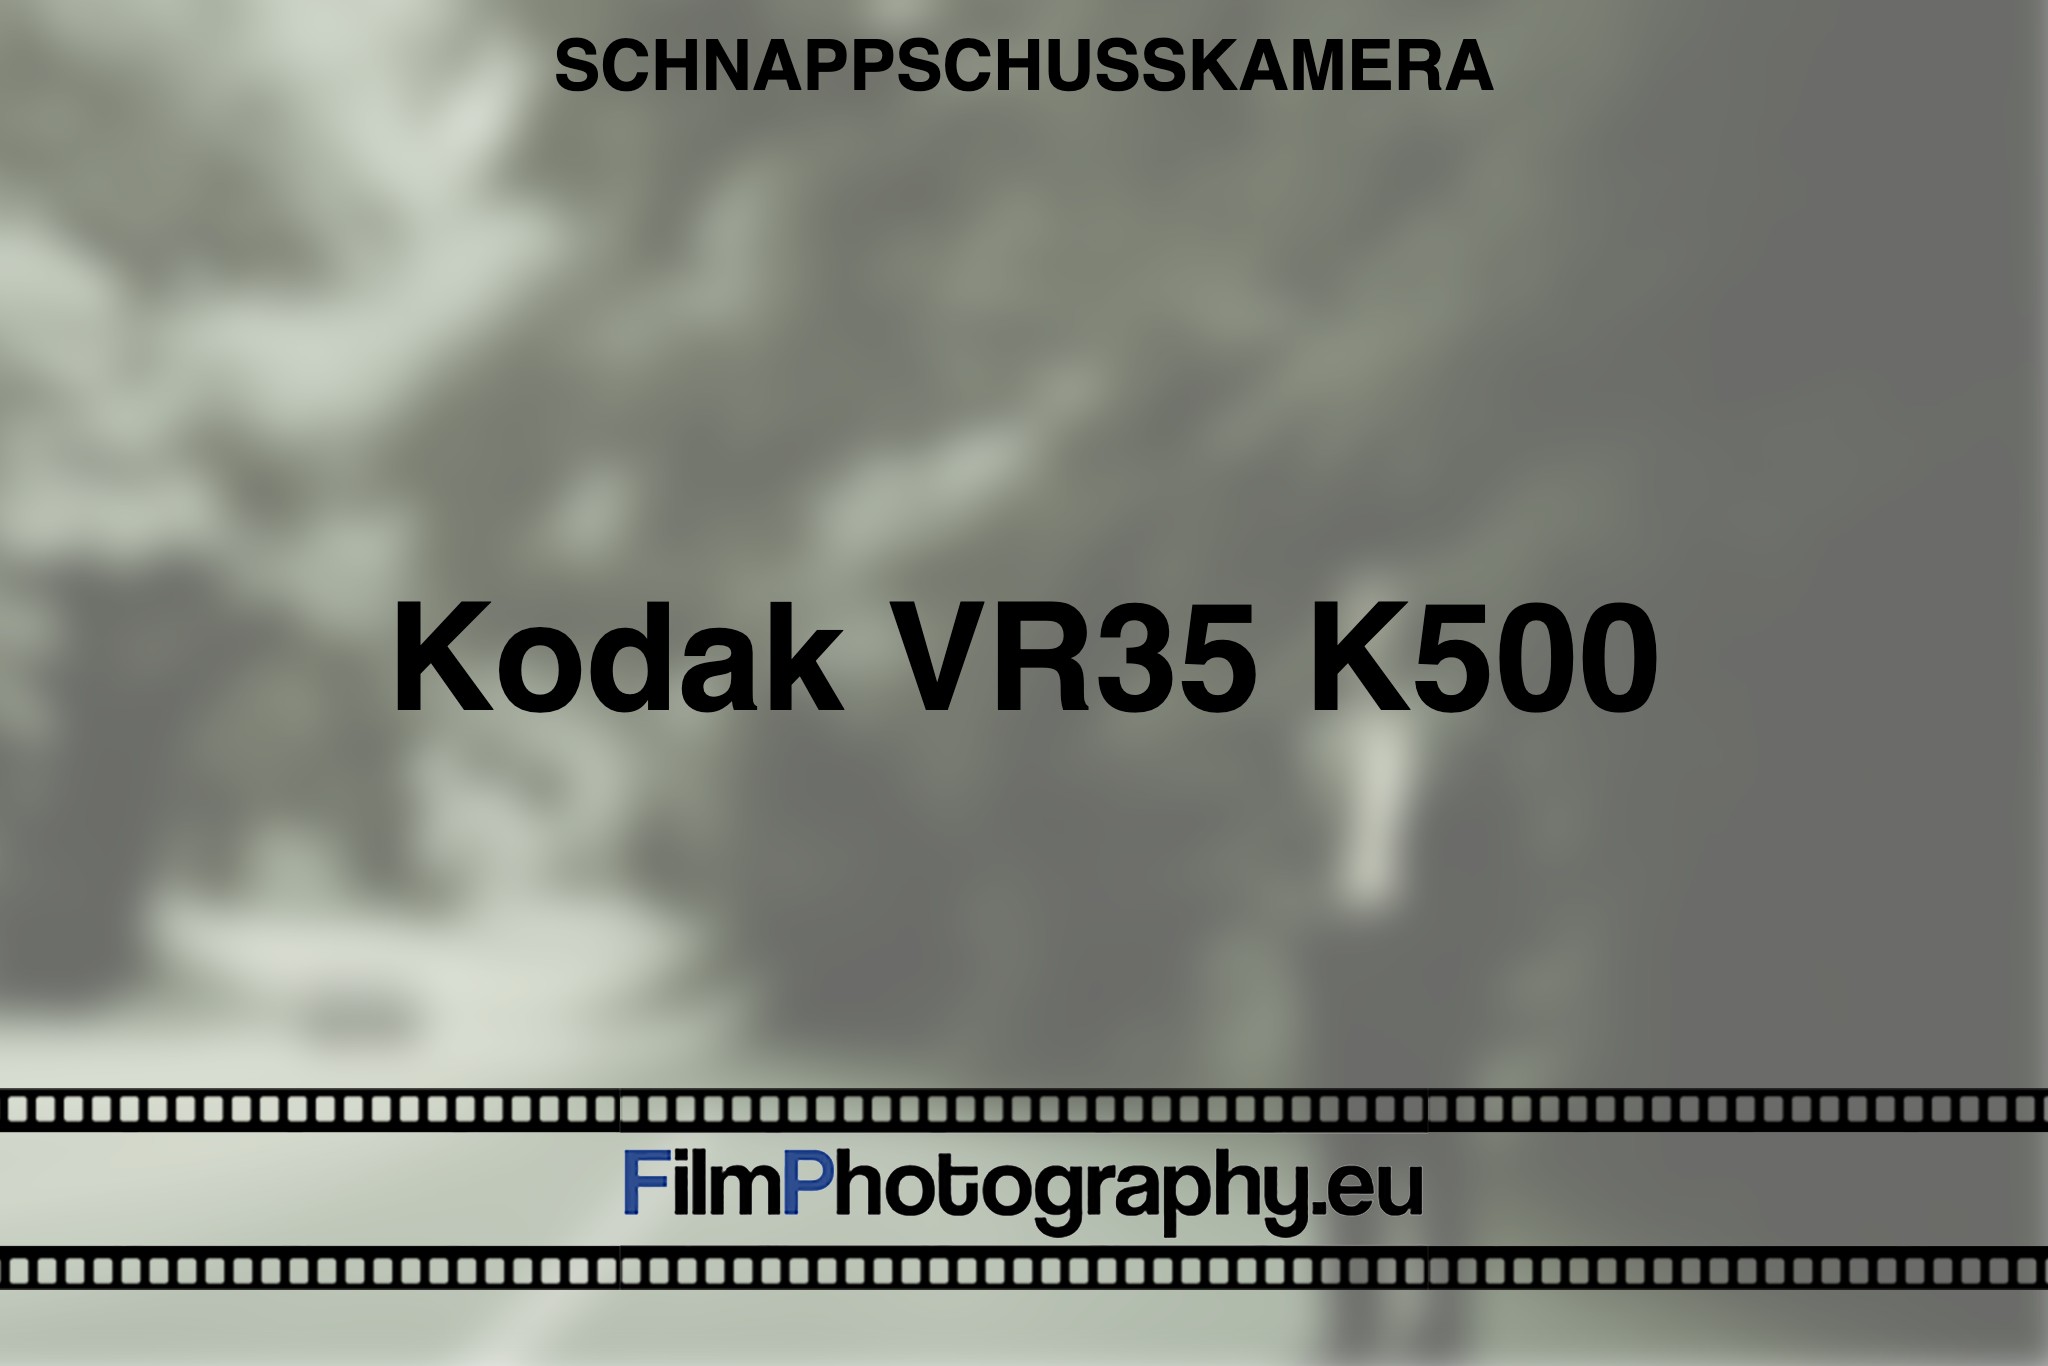 kodak-vr35-k500-schnappschusskamera-bnv